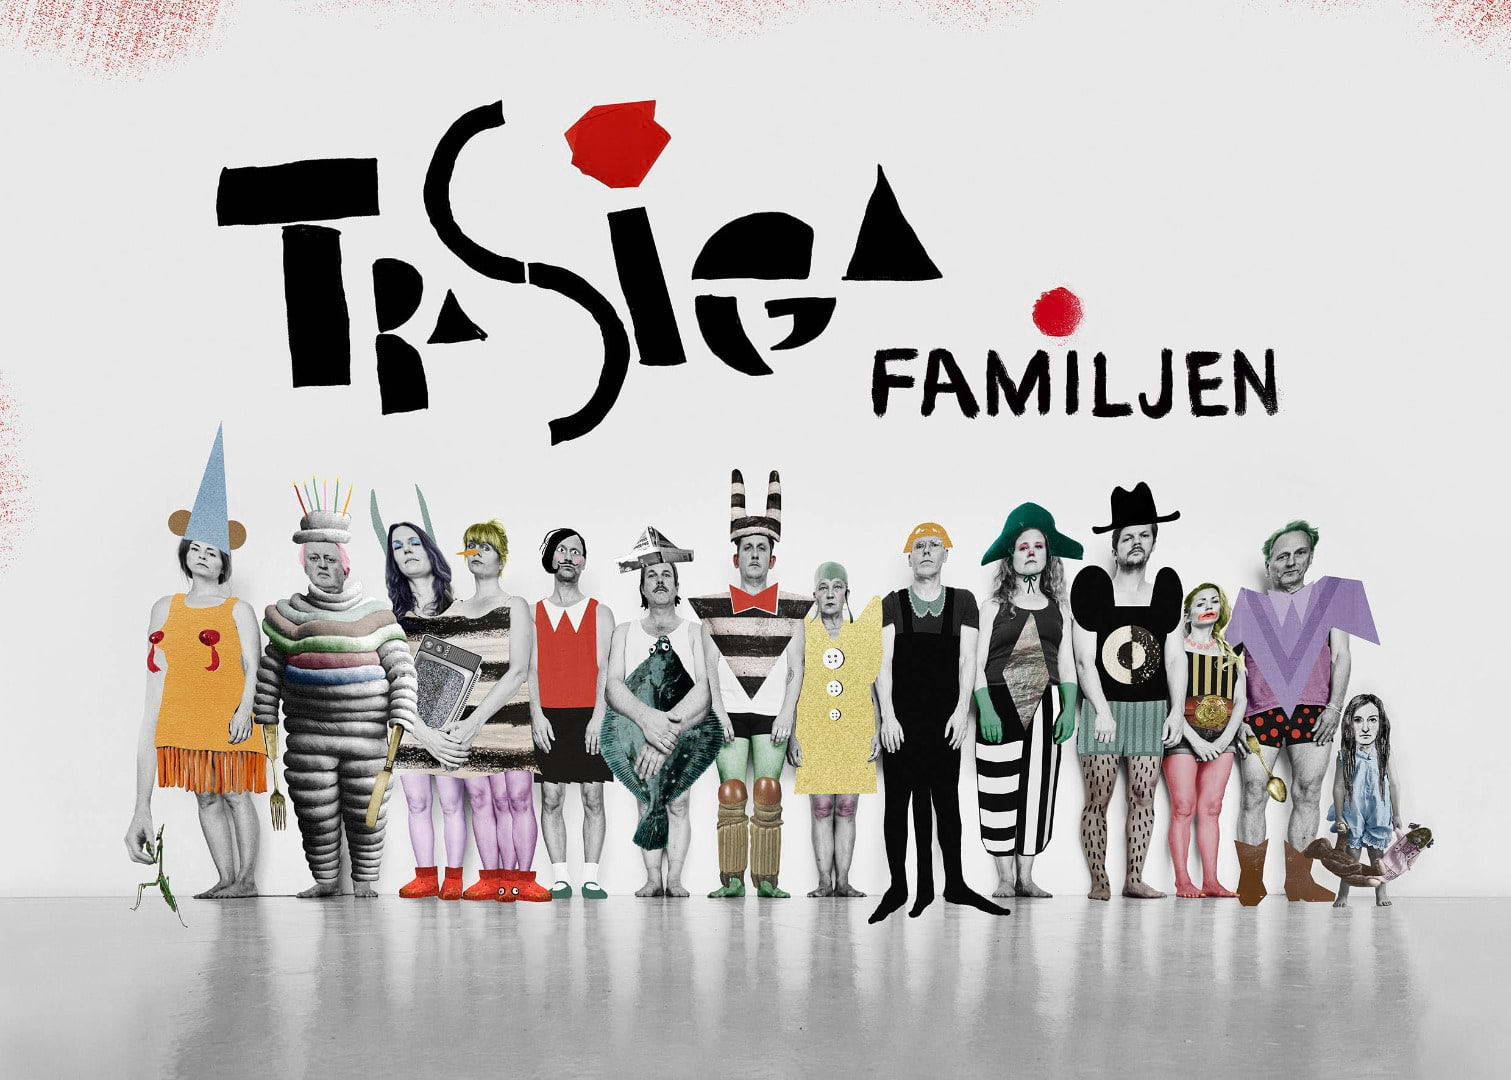 Trasiga Familjen – familjekonsert i Årsta